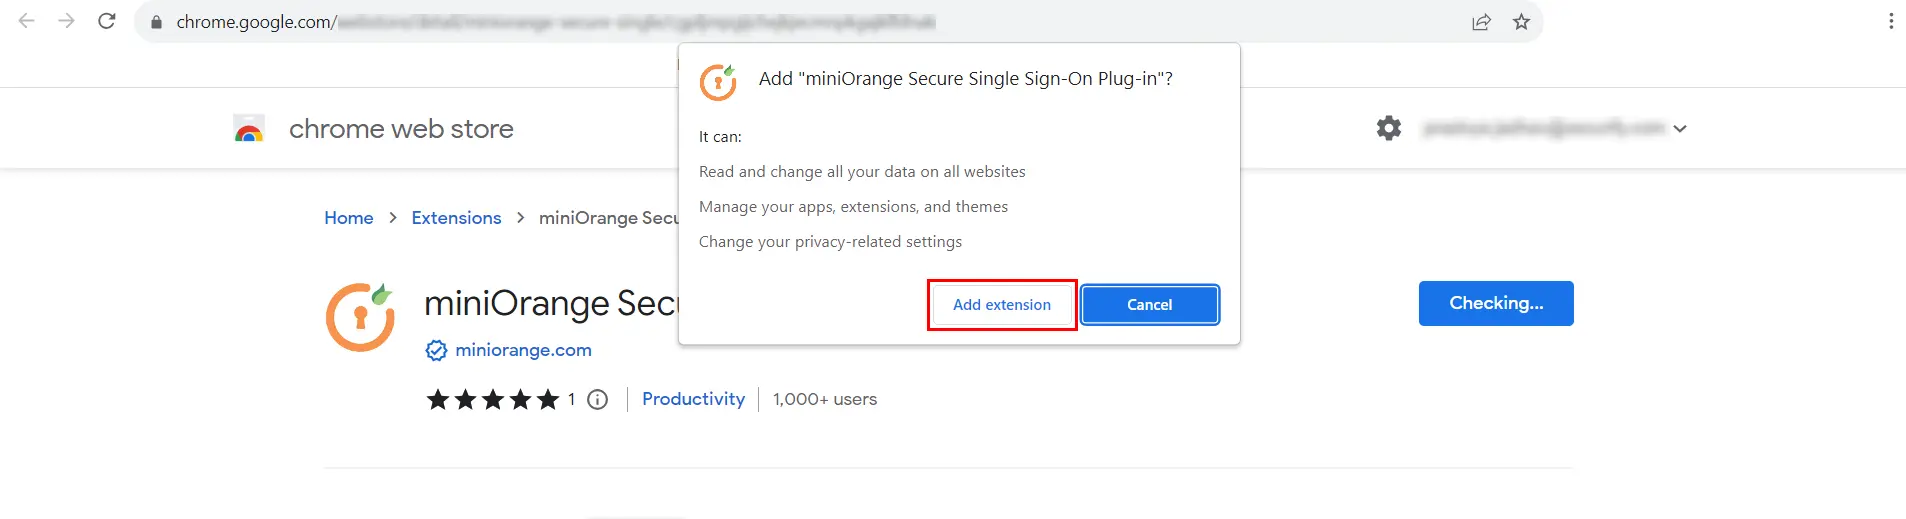 miniOrange Identity Platform Admin Handbook: Browser Extension